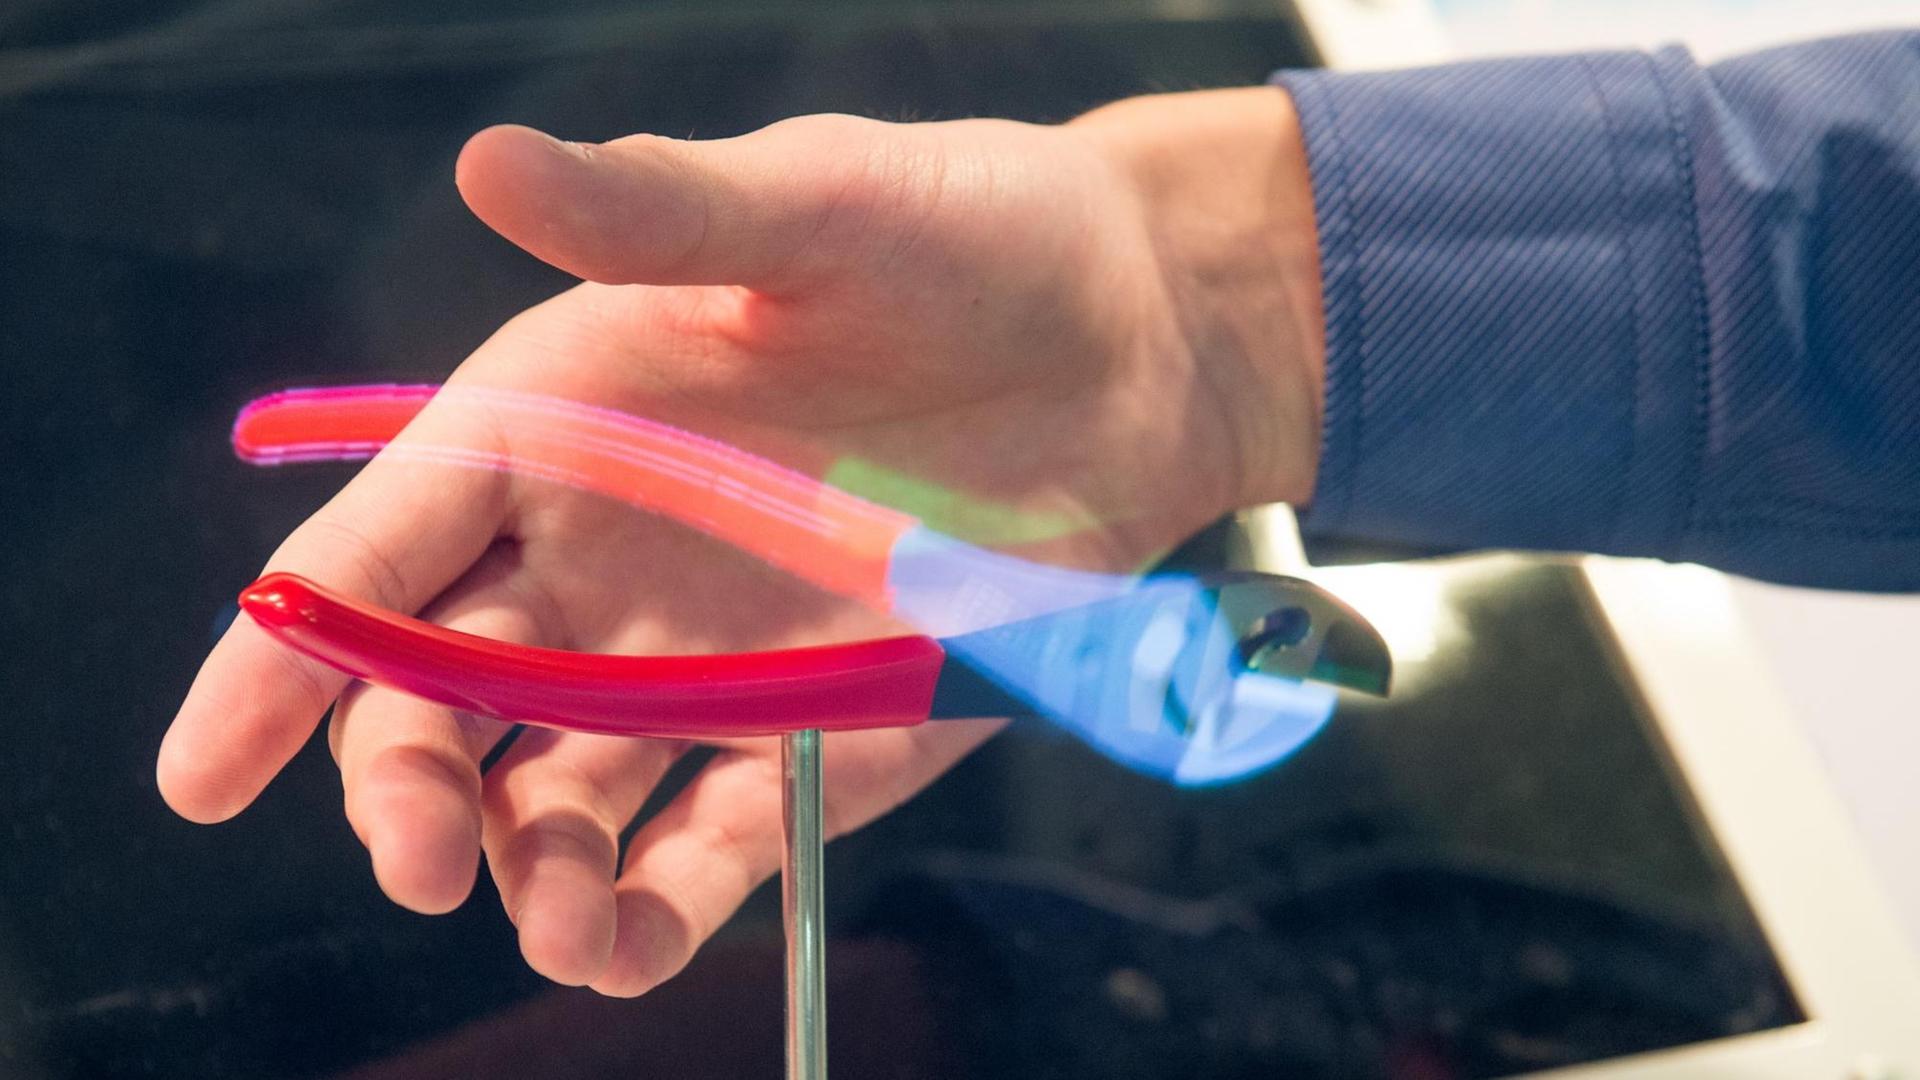 Thomas Gerbracht aus Wuppertal demonstriert die von ihm entwickelte holografischen Projektion. Eine halbe Zange ist auf einem Podest montiert, die andere wird rein optisch als Hologramm ergänzt.